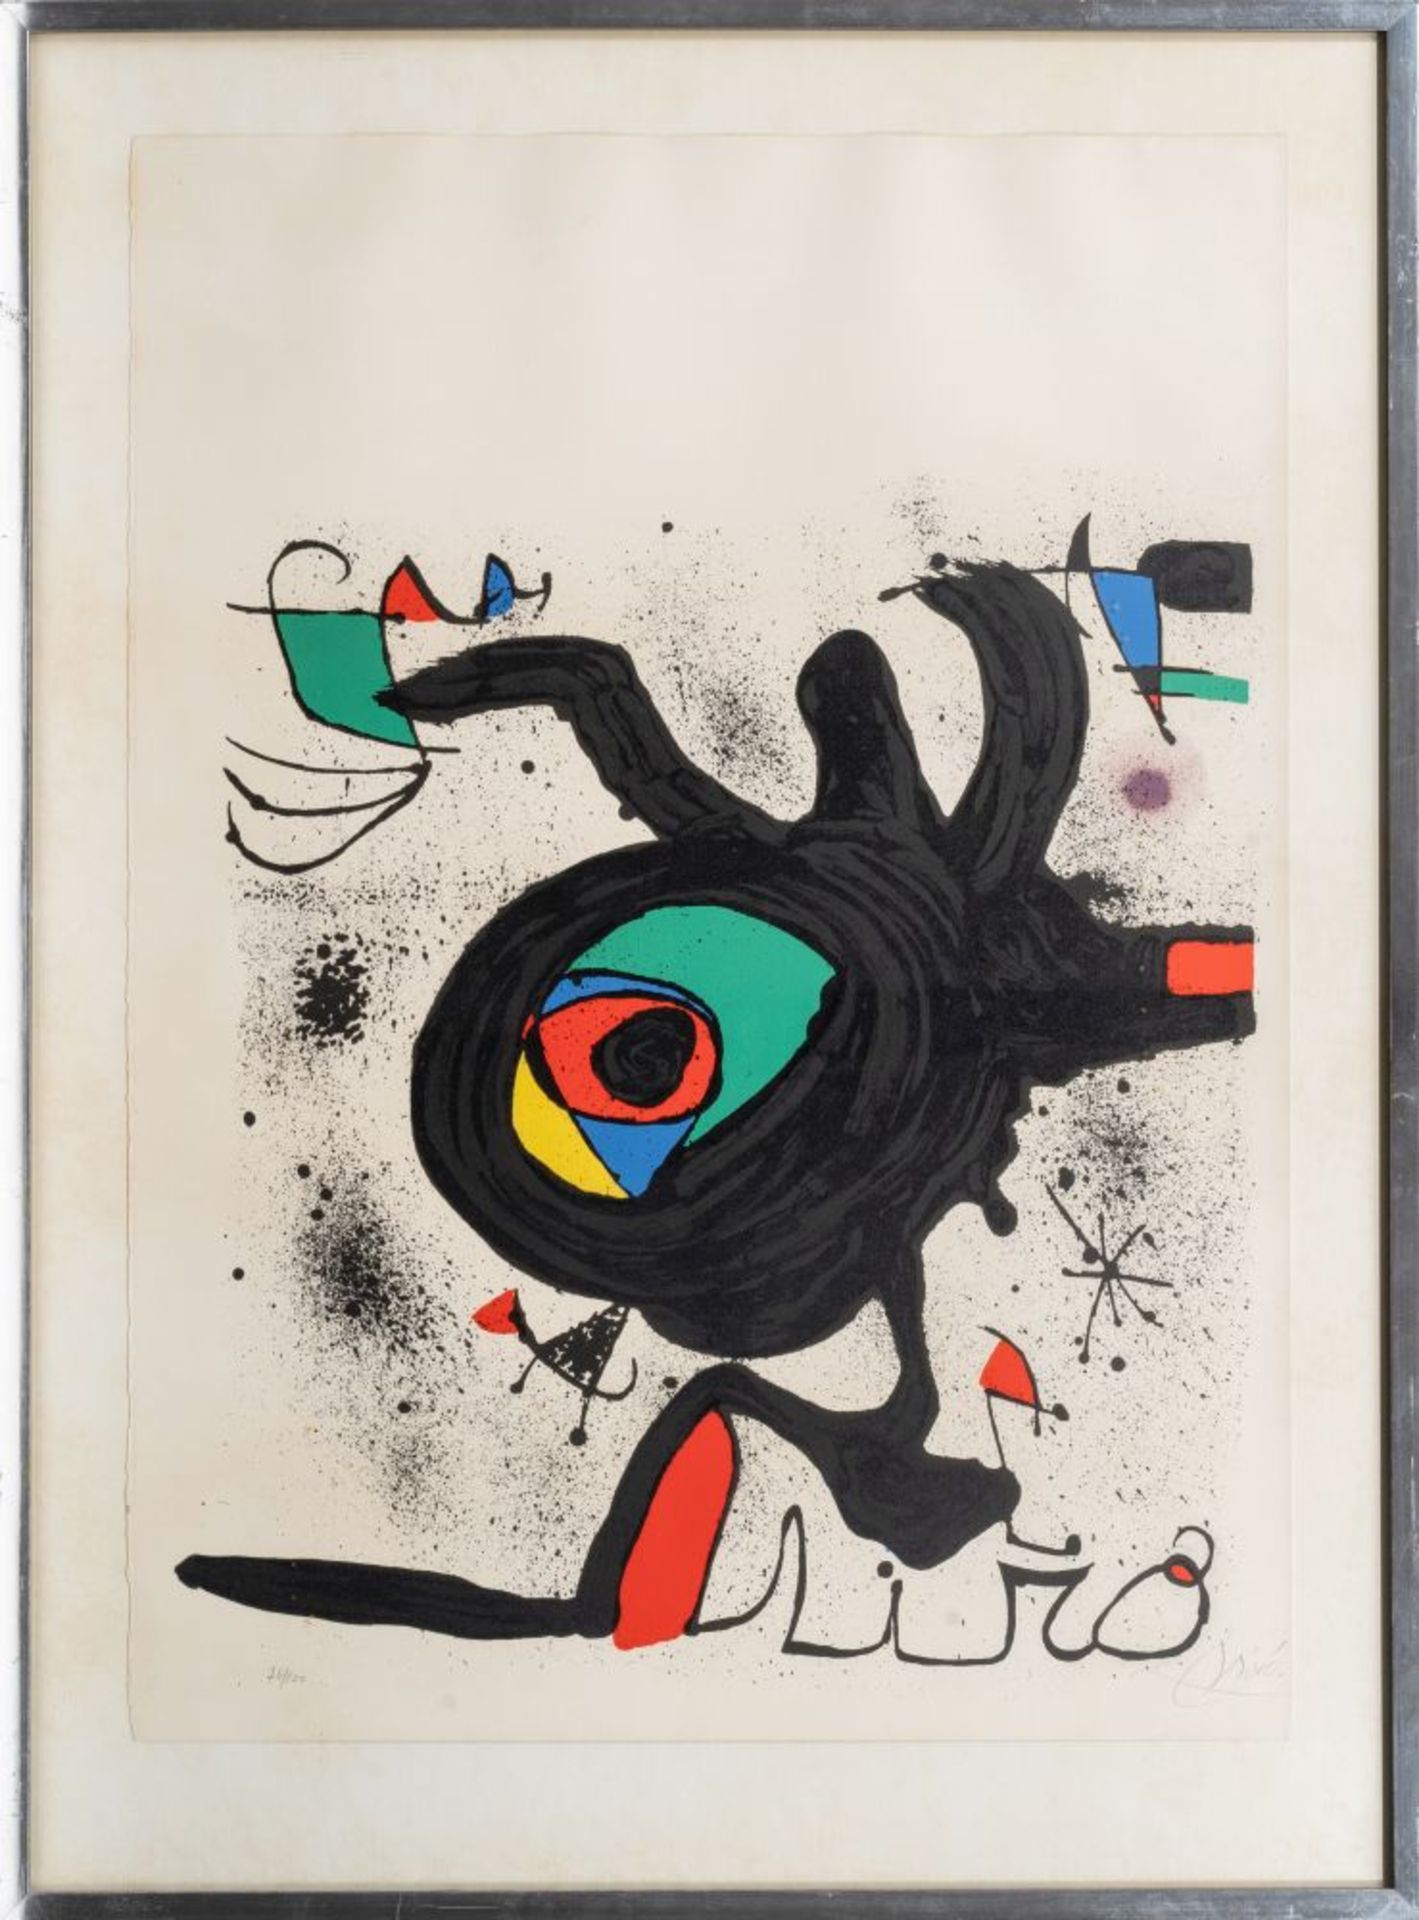 Joan Miró (Barcelona 1893 - Palma de Mallorca 1983). Das graphische Werk - Kunstverein Hamburg. - Bild 2 aus 2